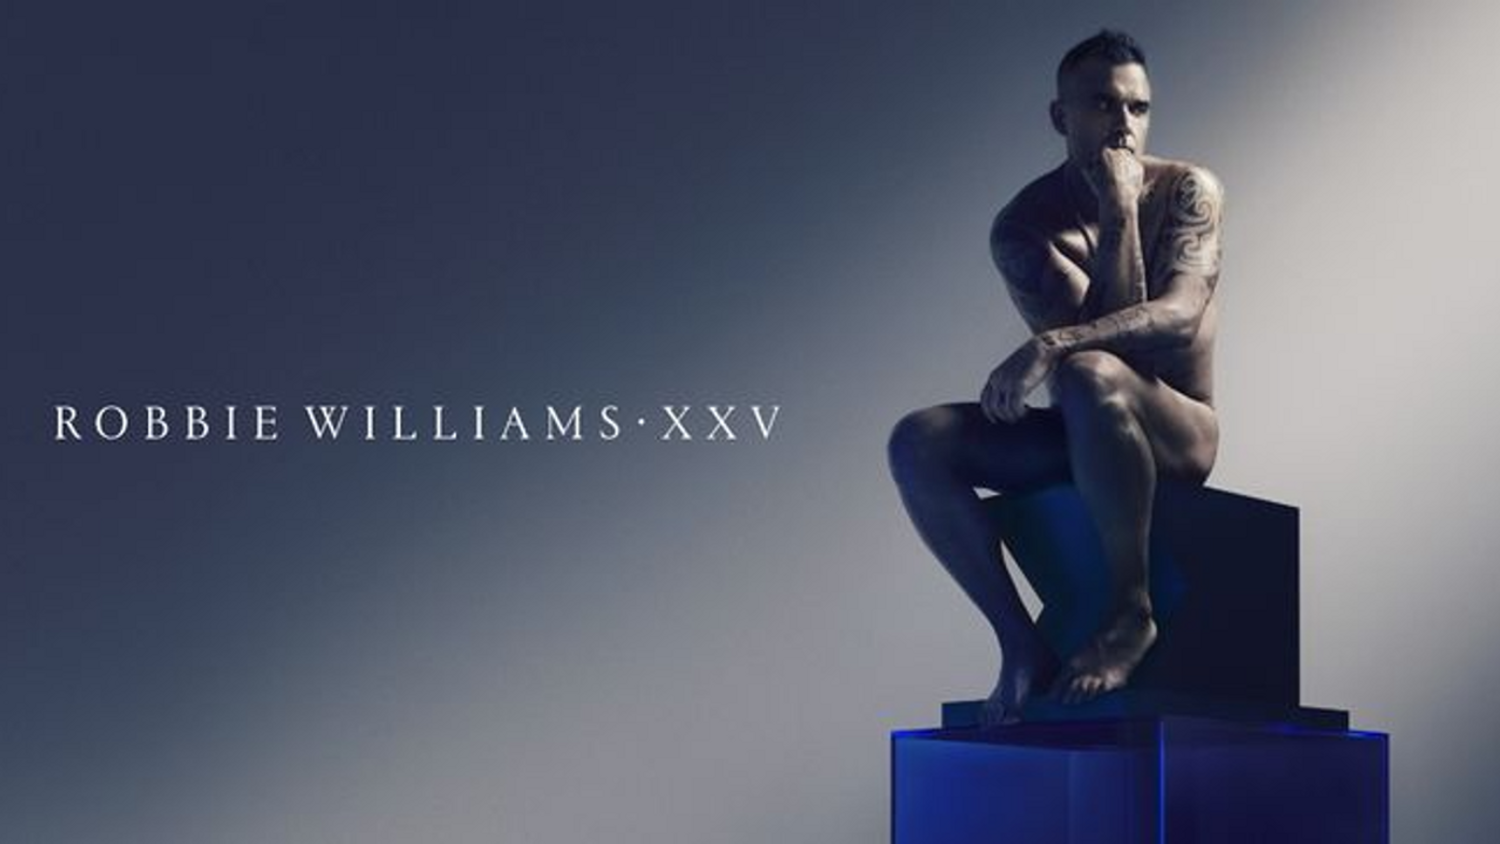 « Lost », le nouveau single de Robbie Williams est enfin sorti 